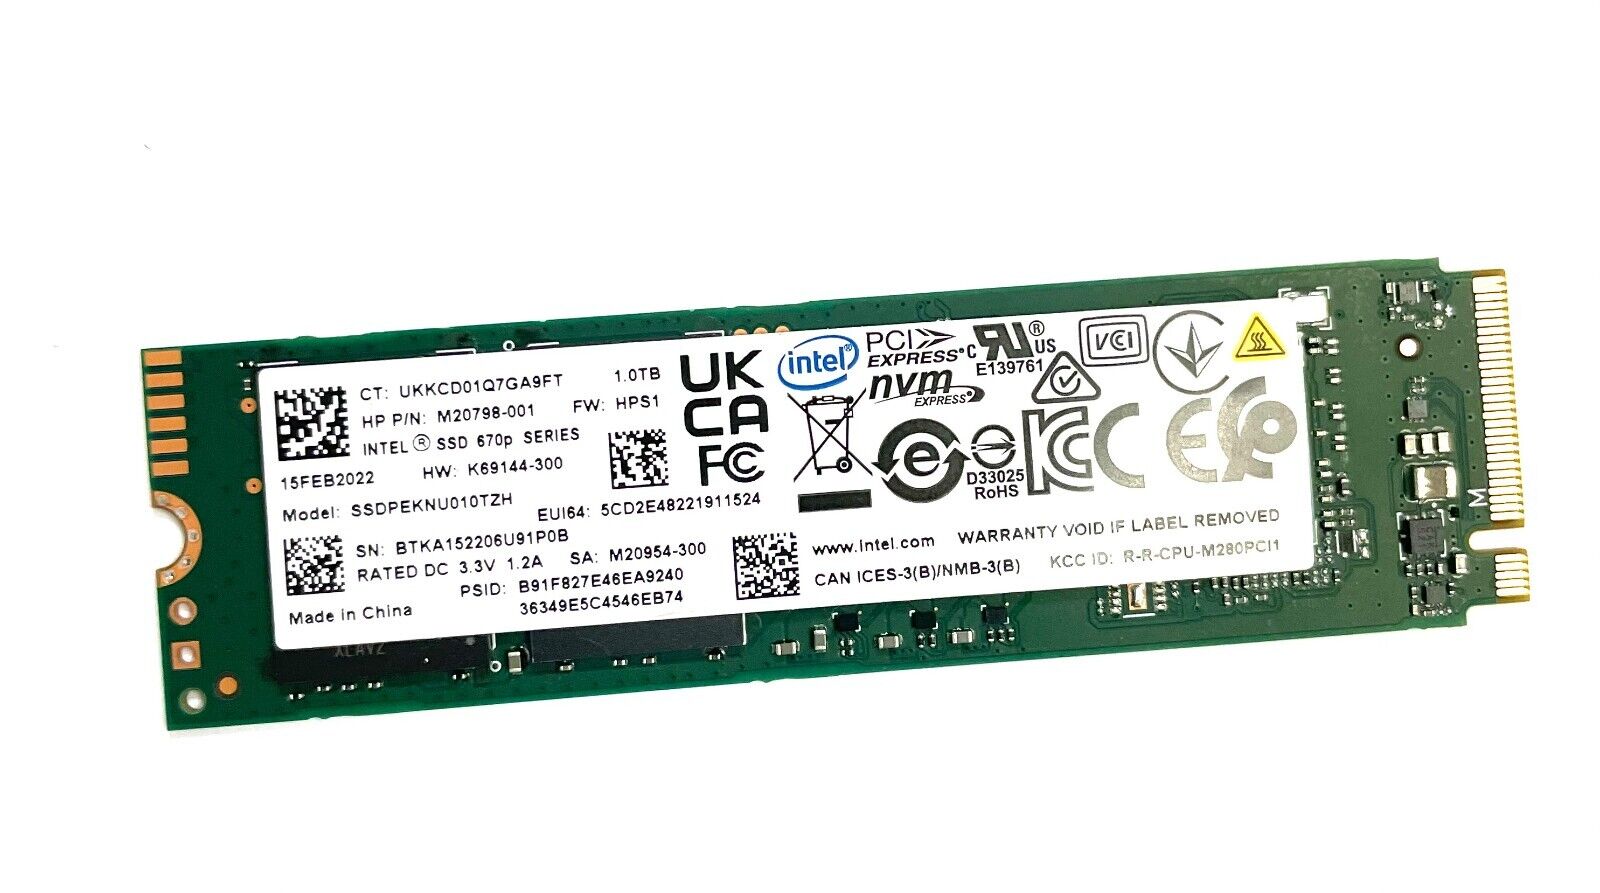 Genuine Intel HP  1TB Intel  M20798-001  SSD NVMe Hard Drive  SSDPEKNU010TZH